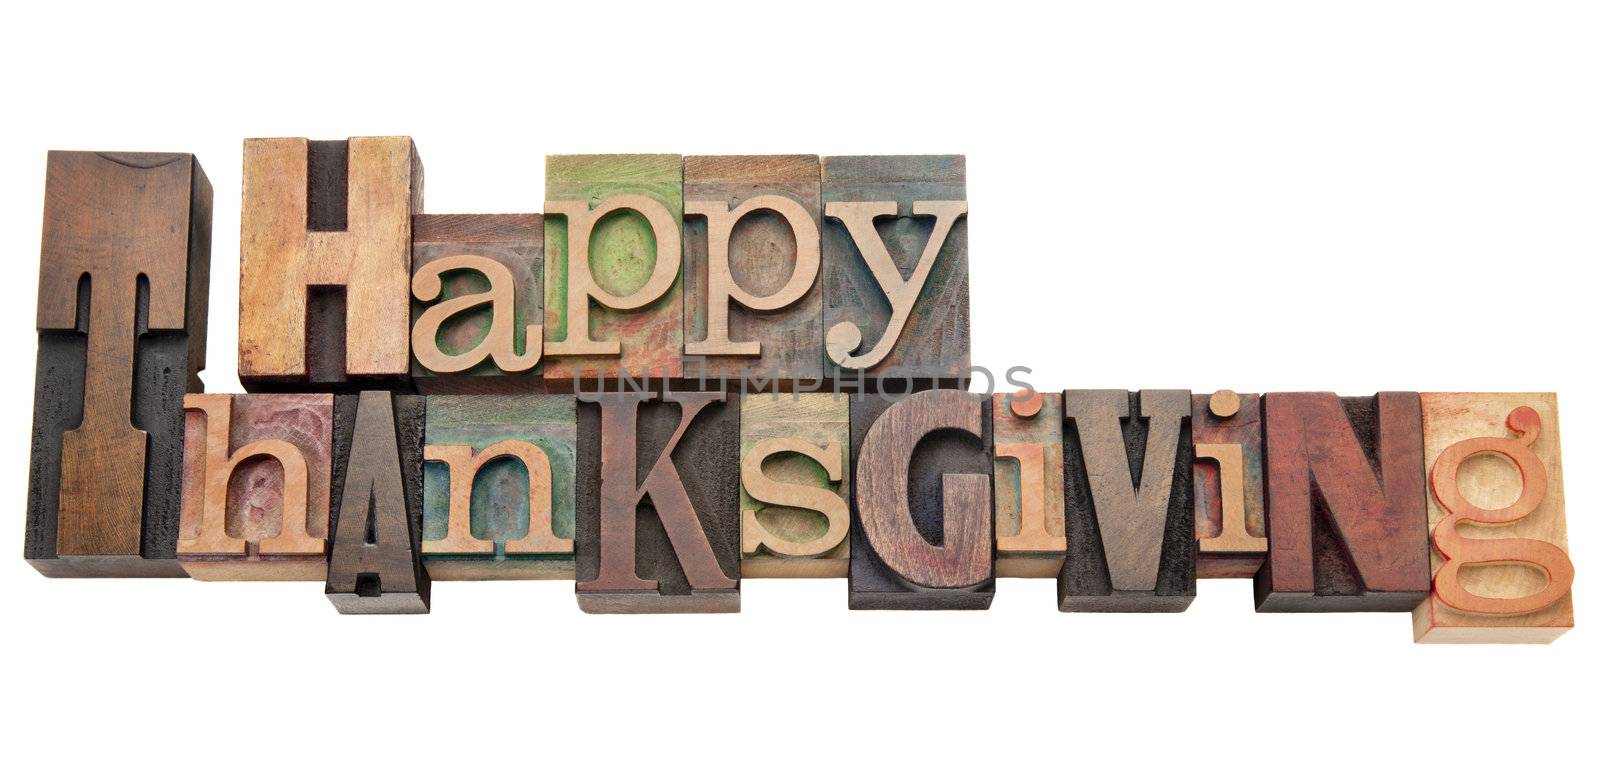 Happy Thanksgiving in letterpress type by PixelsAway